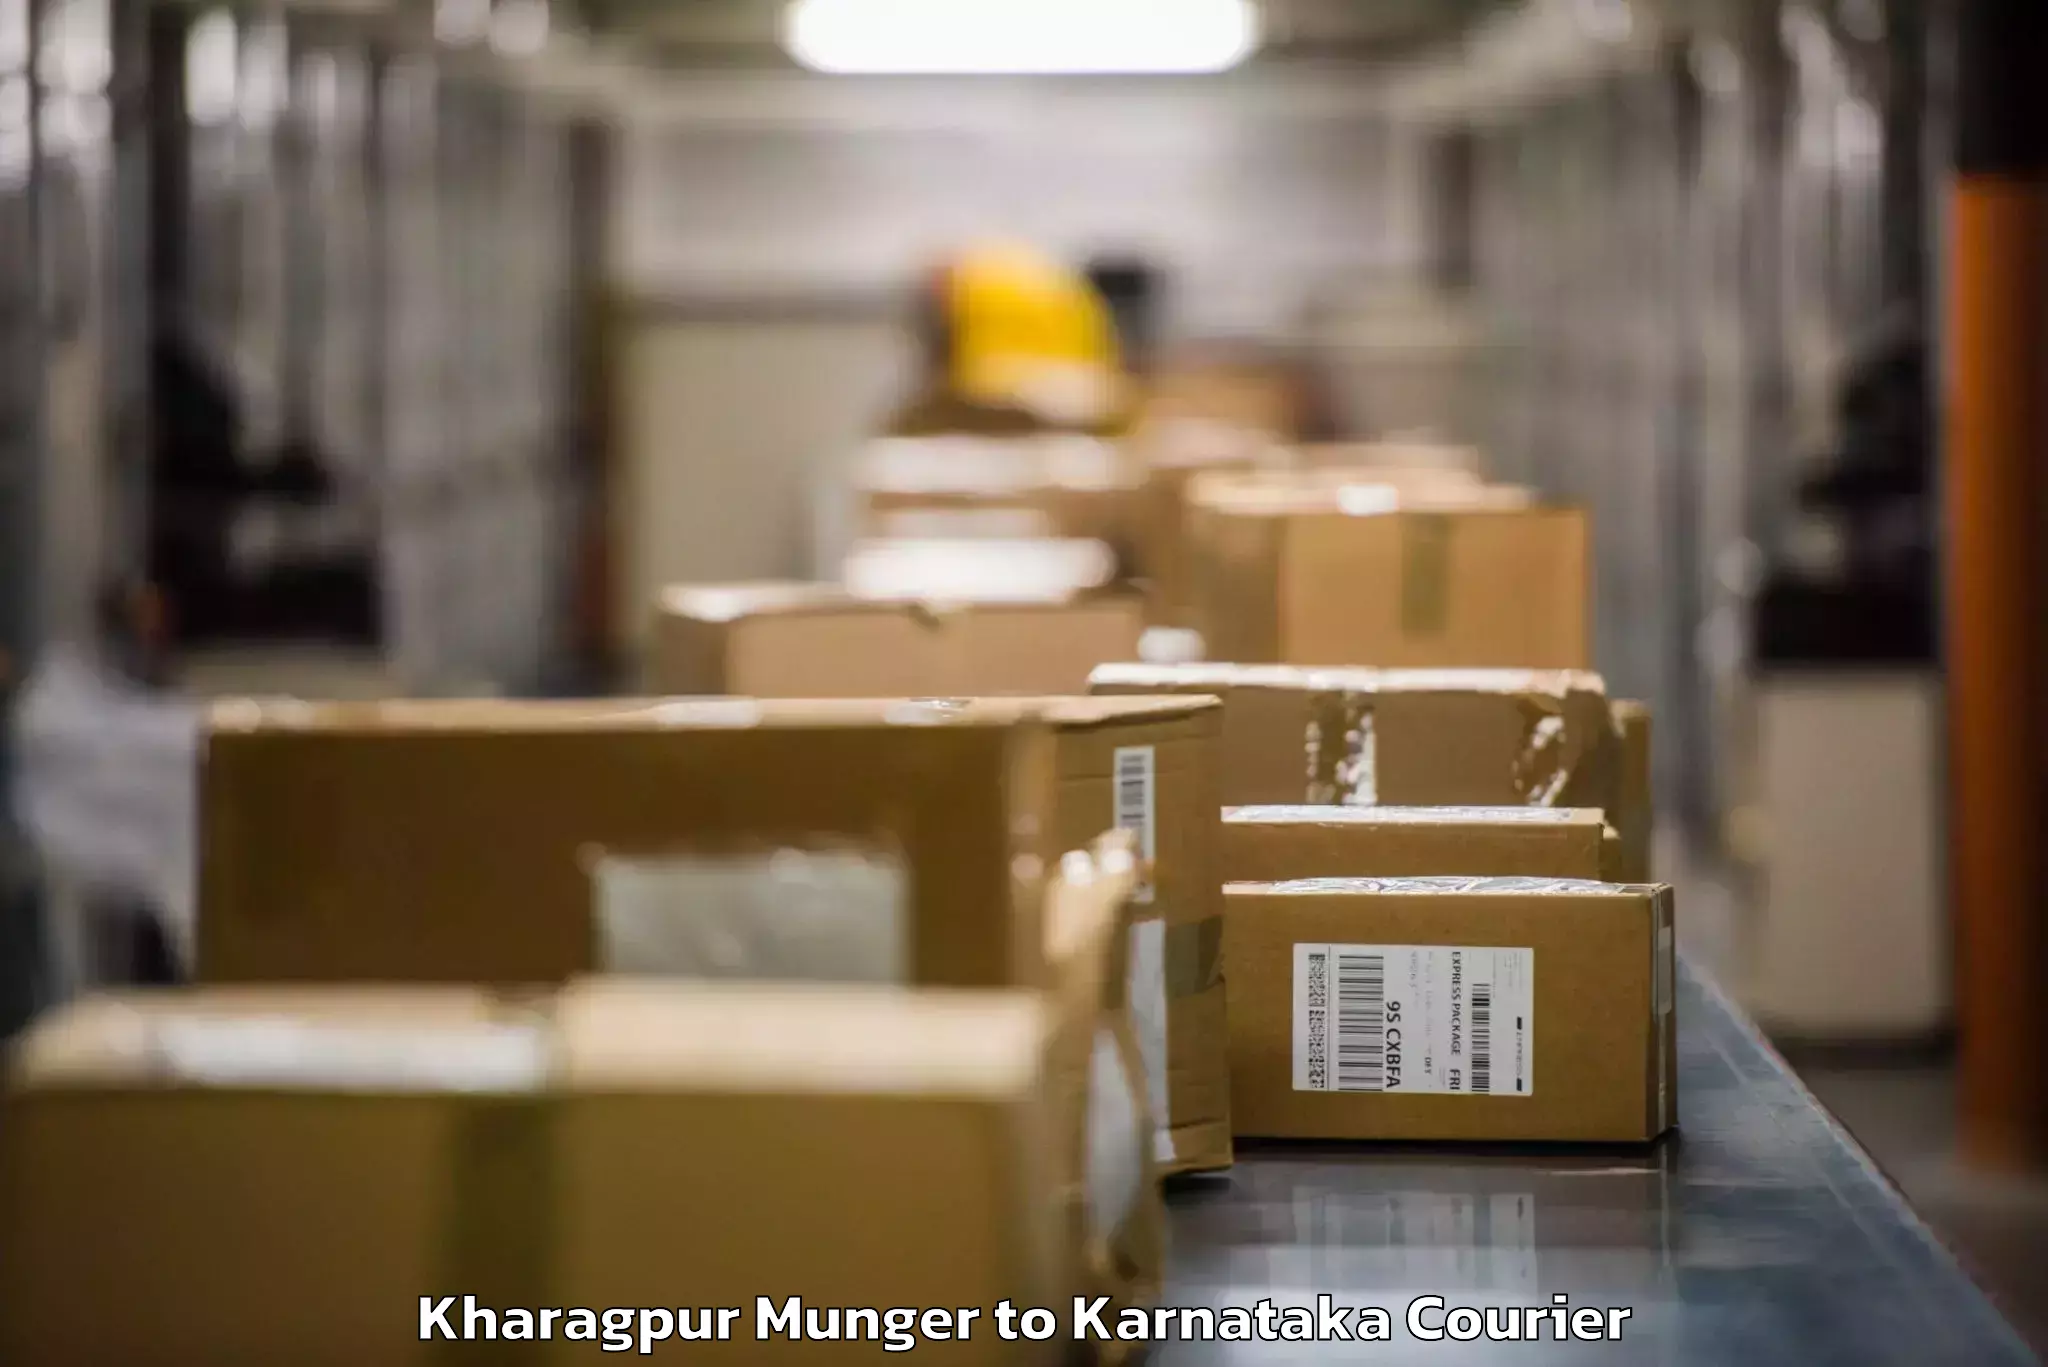 Baggage courier FAQs Kharagpur Munger to Karnataka